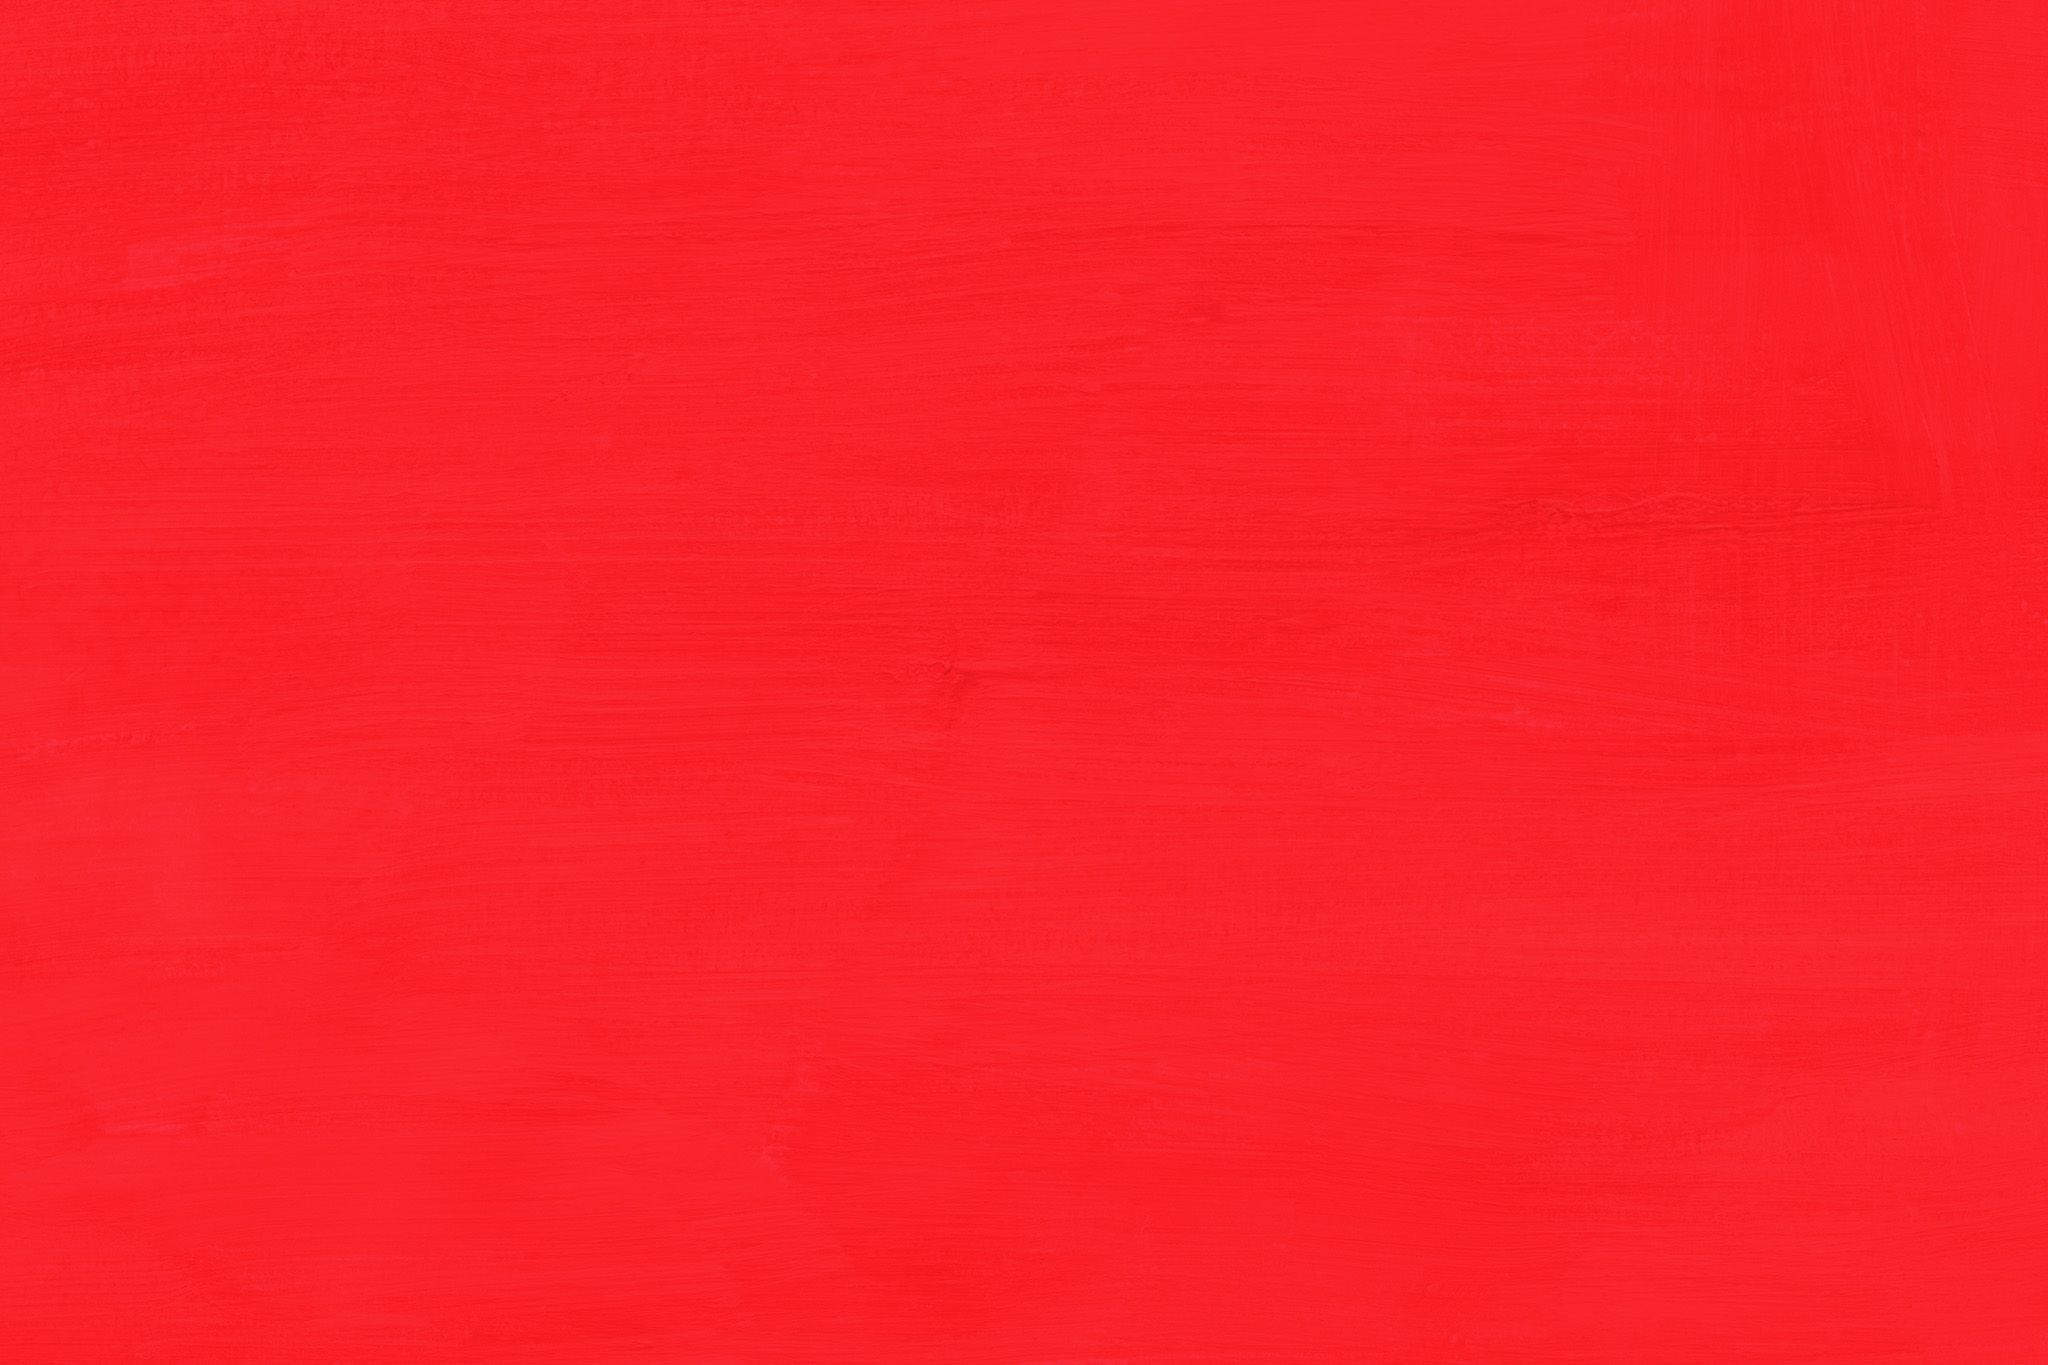 おしゃれな赤色の無地の背景 の画像素材を無料ダウンロード 1 フリー素材 Beiz Images